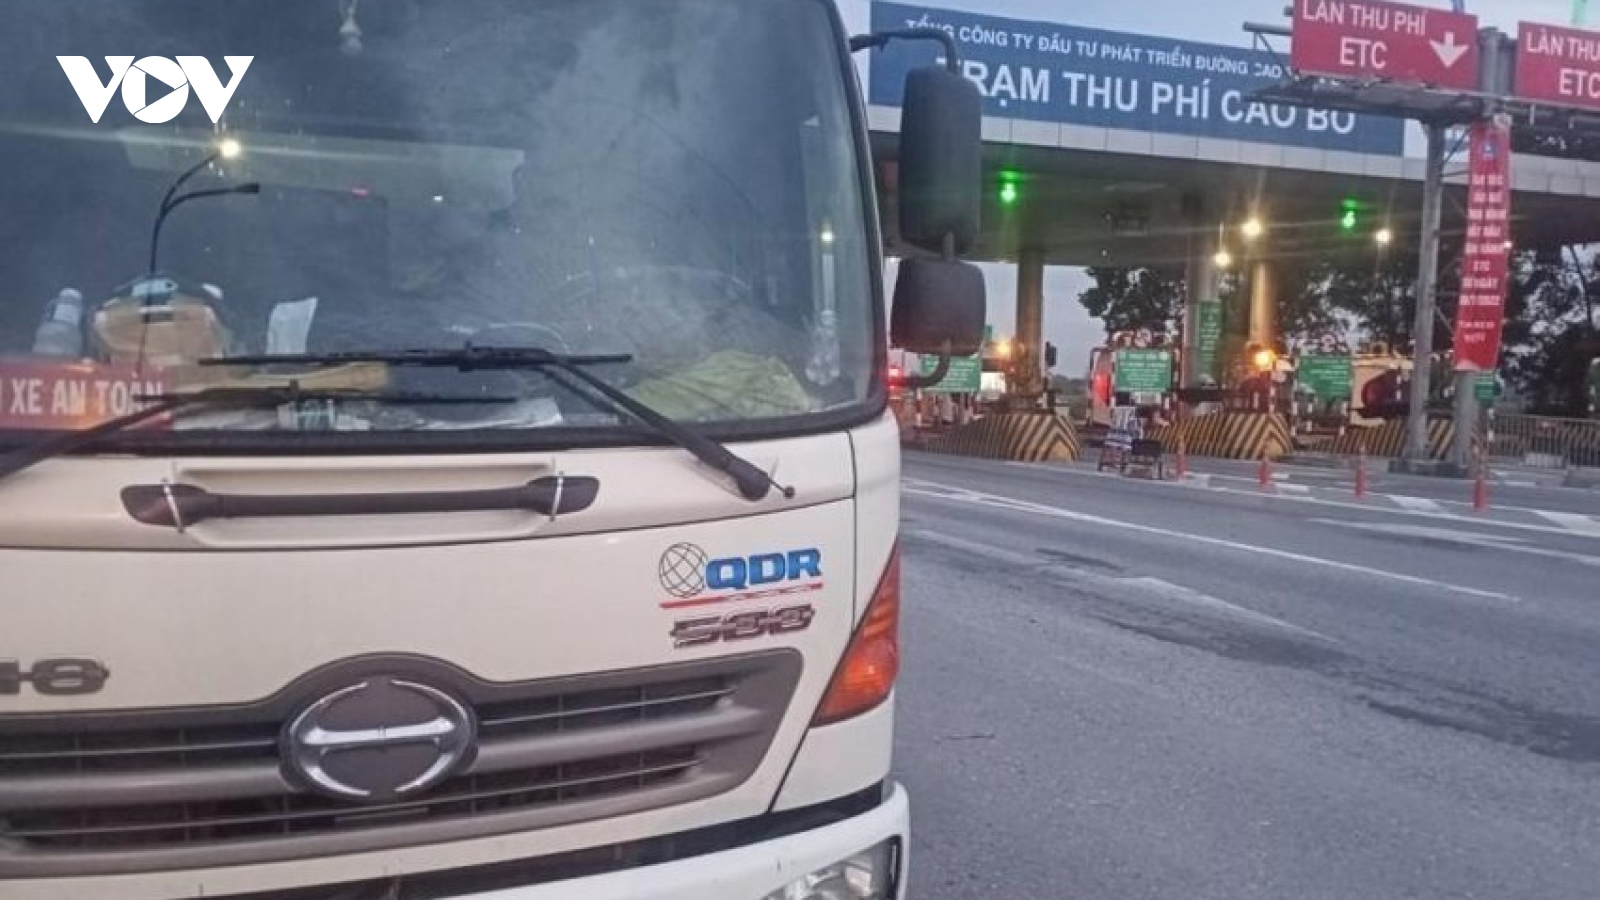 Barie thu phí tự động ETC đập vỡ kính ô tô trên cao tốc Cầu Giẽ-Ninh Bình